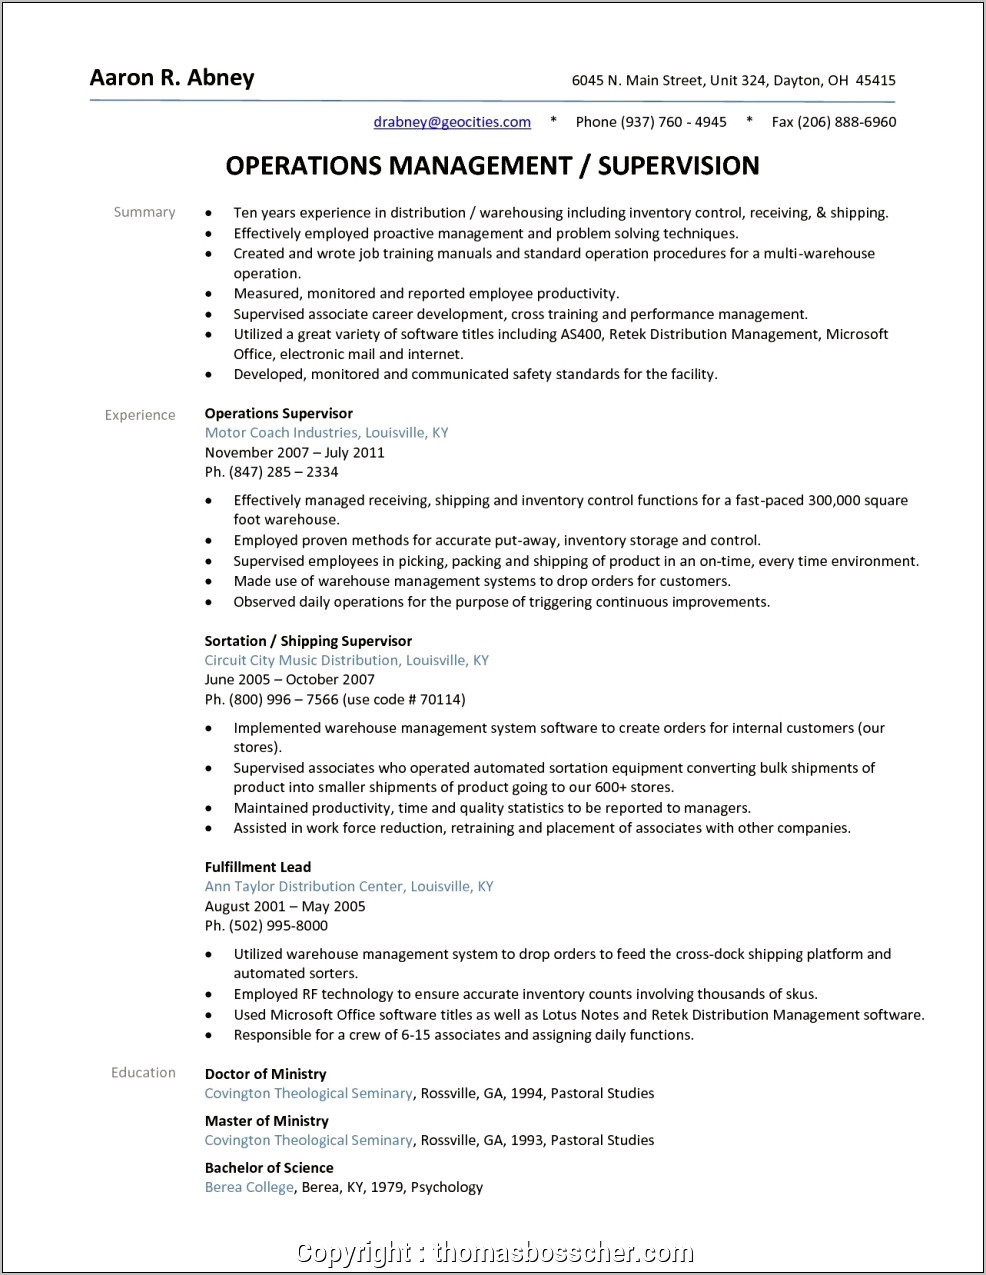 Ware House Supervisor Sample Resume